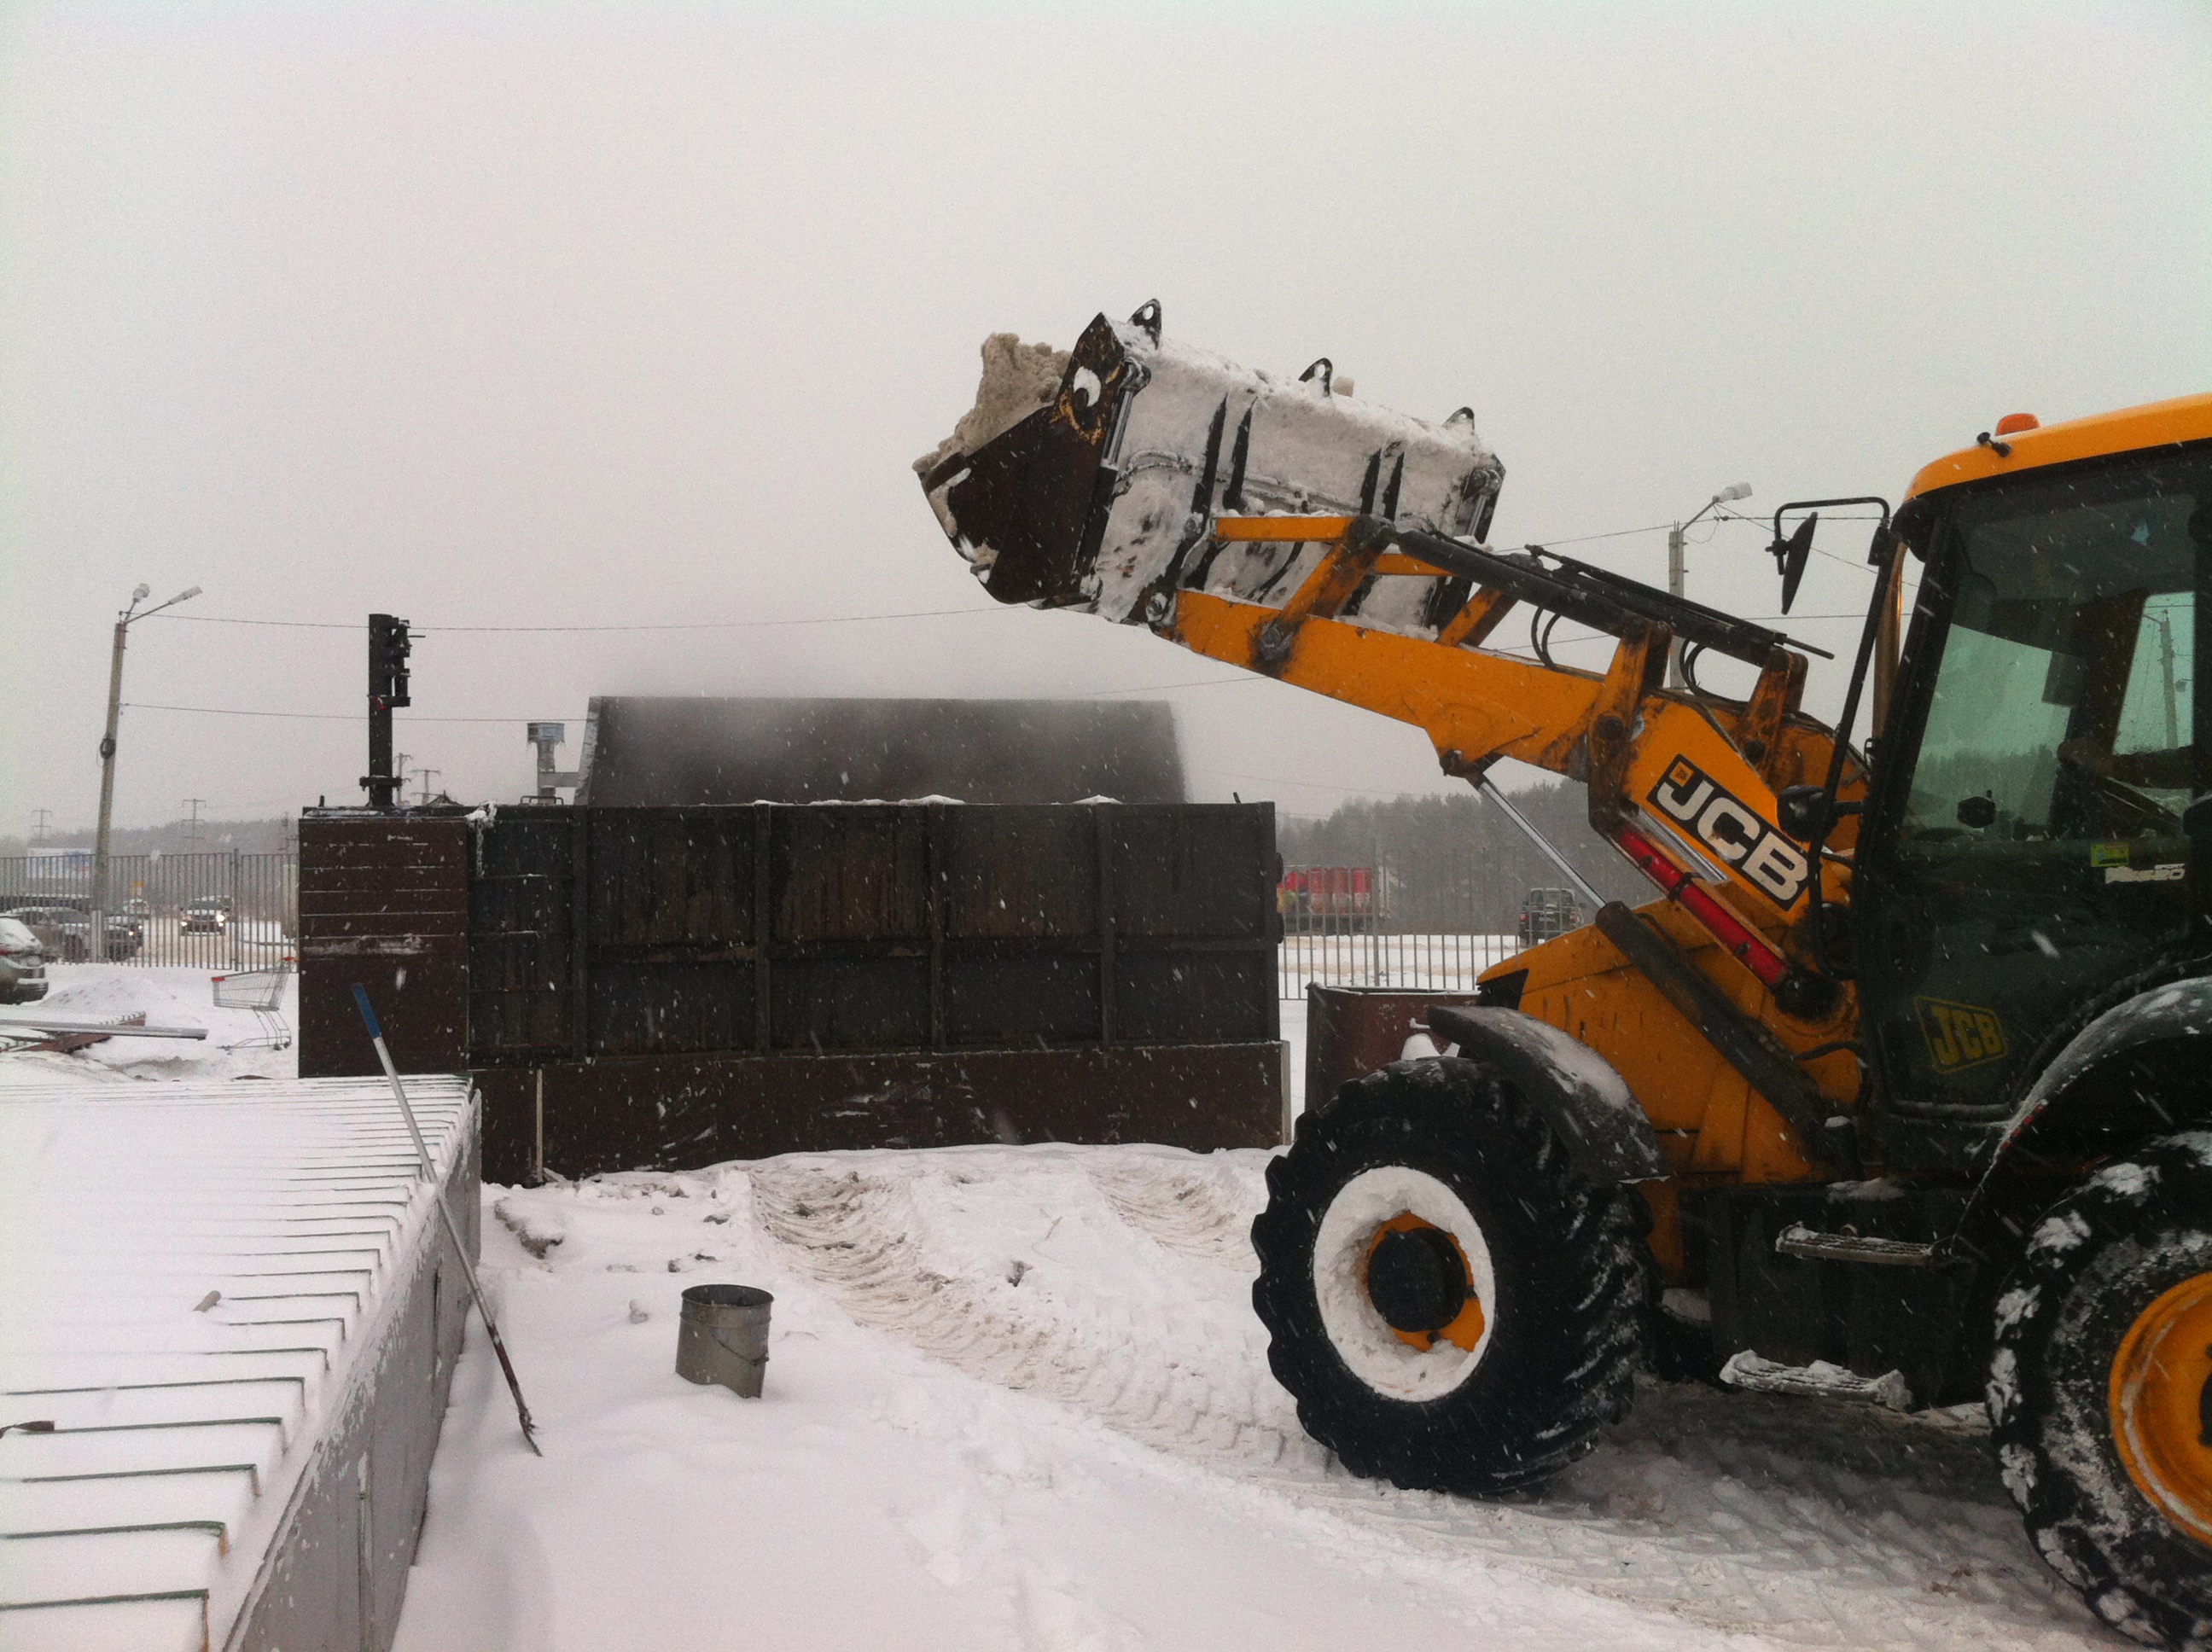 Установка плавления снега WATEQ M 50 в работе.